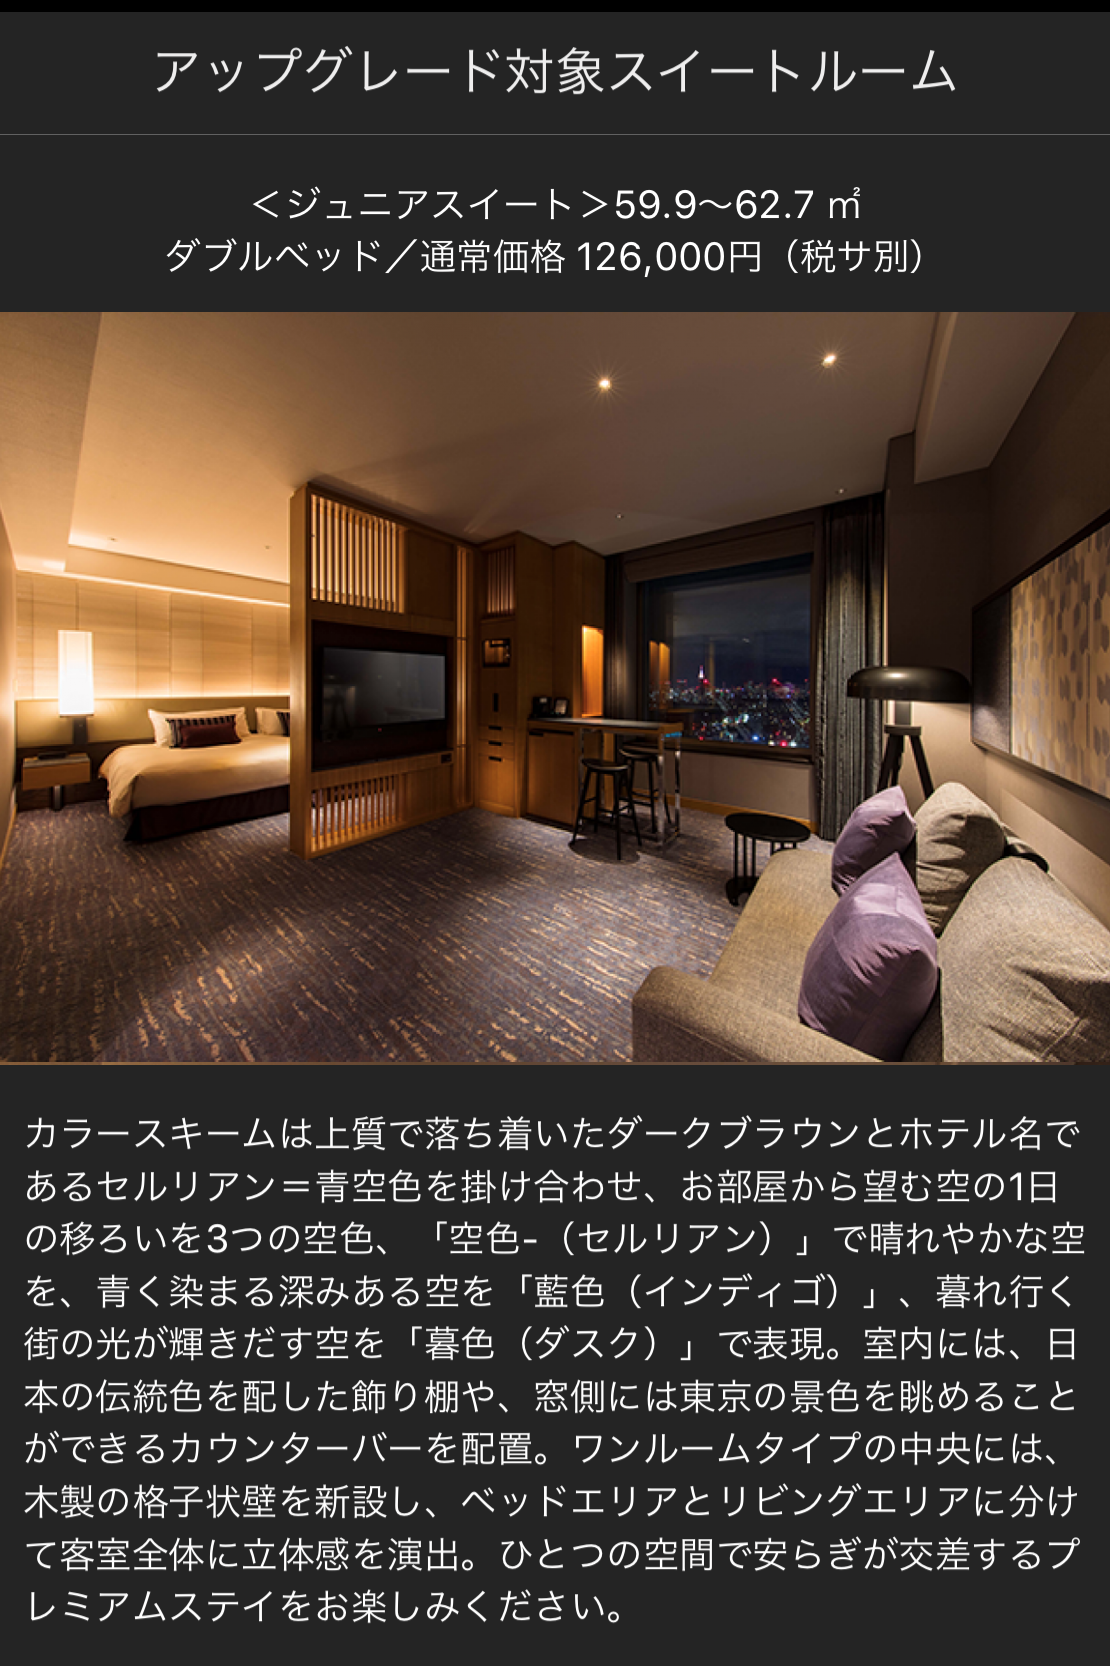 ラグジュアリーカードのセルリアンタワー東急ホテル宿泊プラン (4)